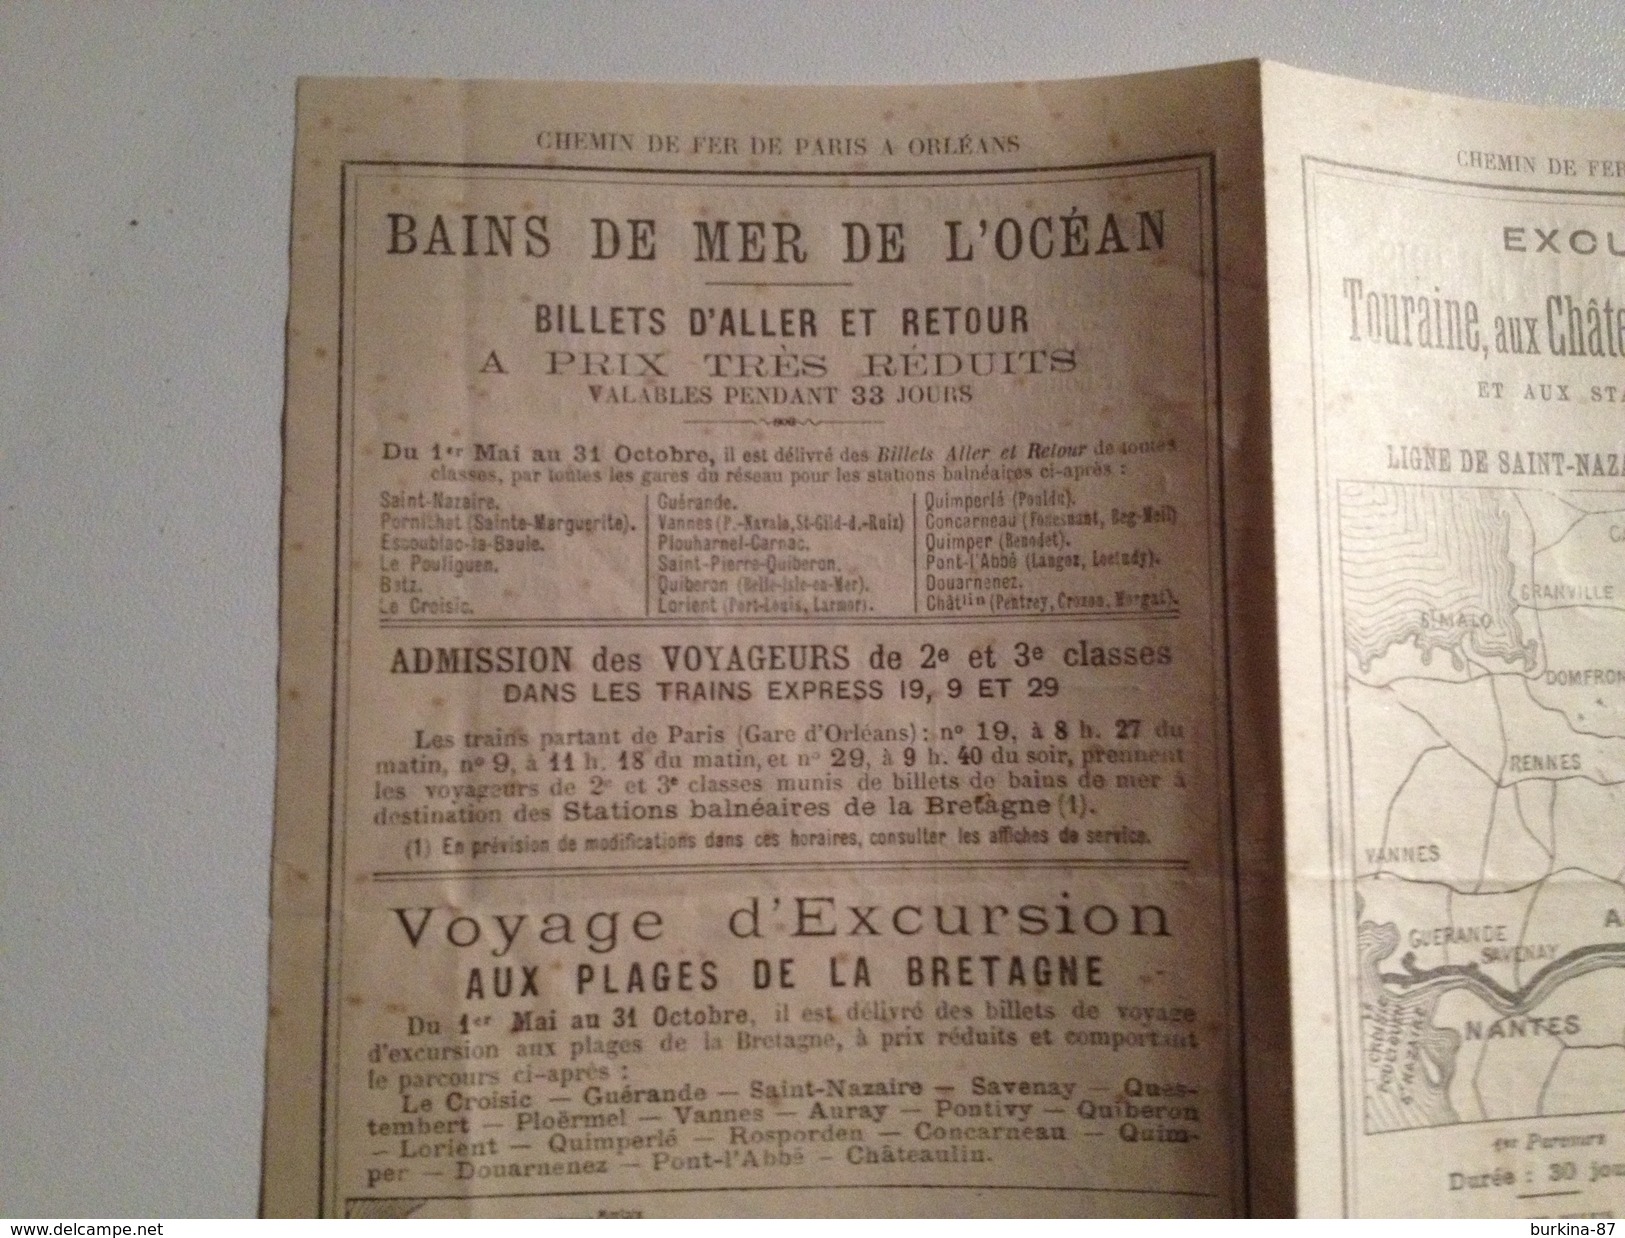 Chemin De Fer, Paris à Orlean, 1896, Publicité Vers Les Stations Thermales Et Excursions En Touraine - Europe